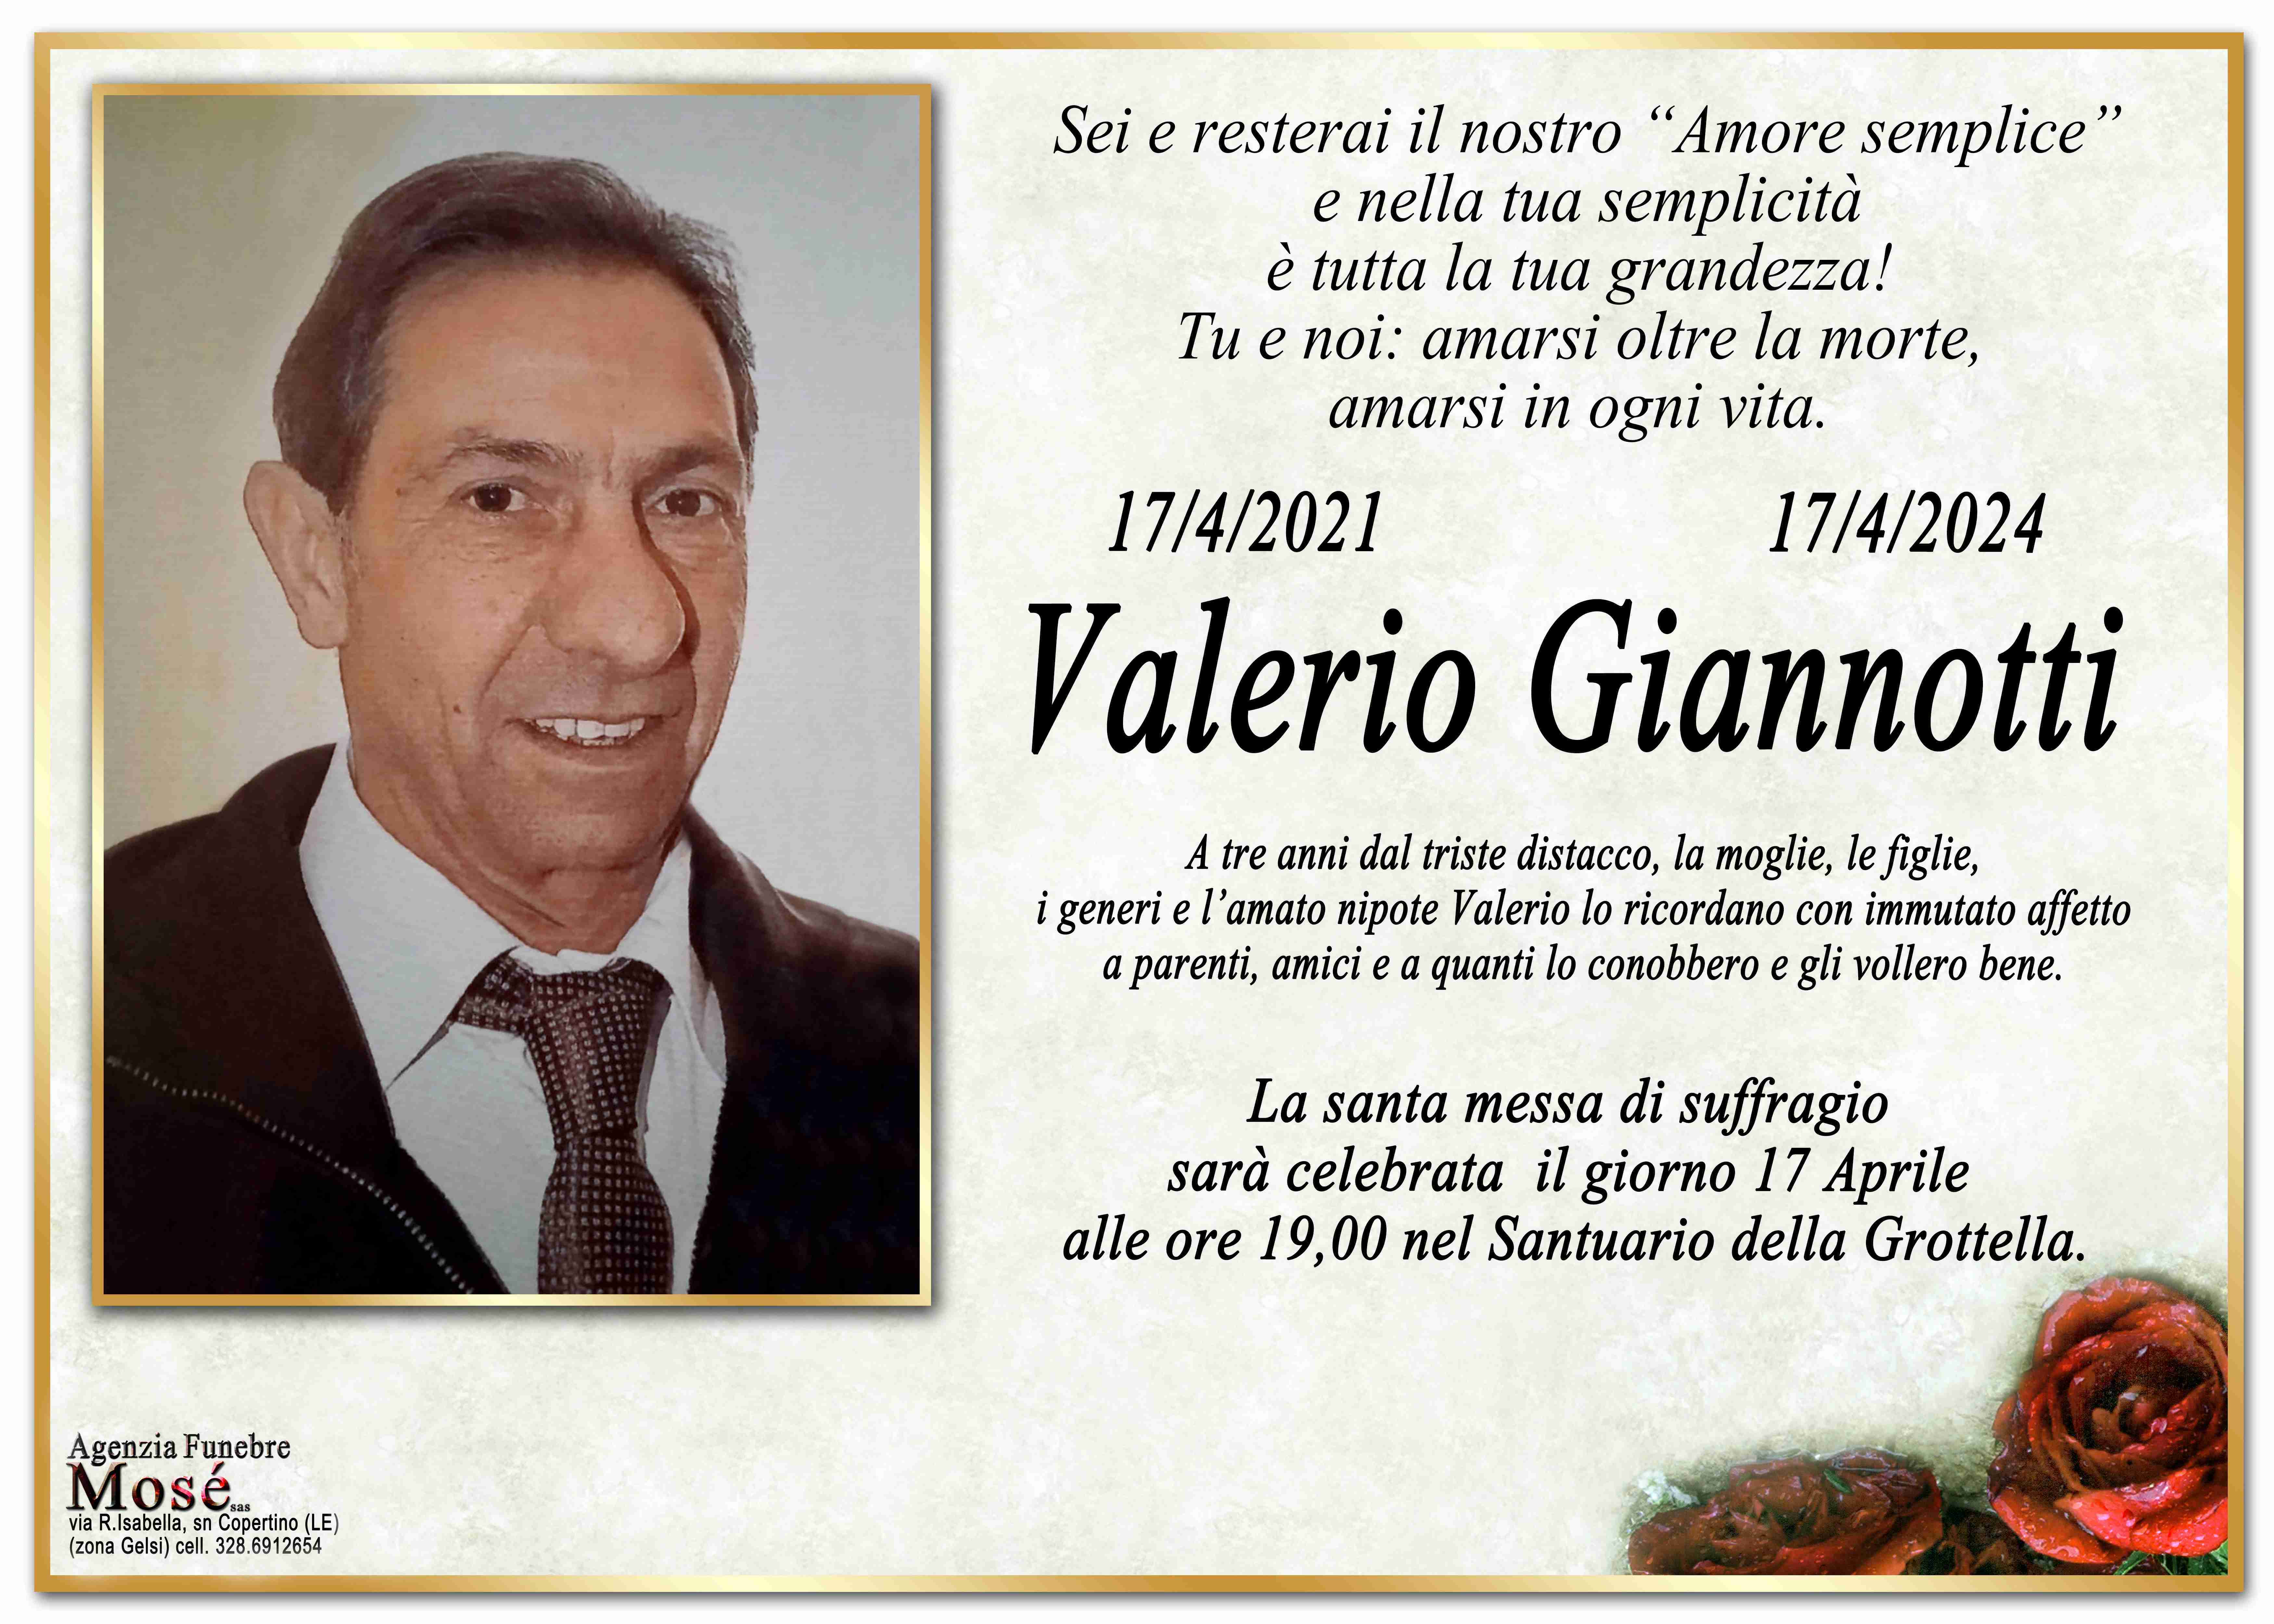 Valerio Giannotti